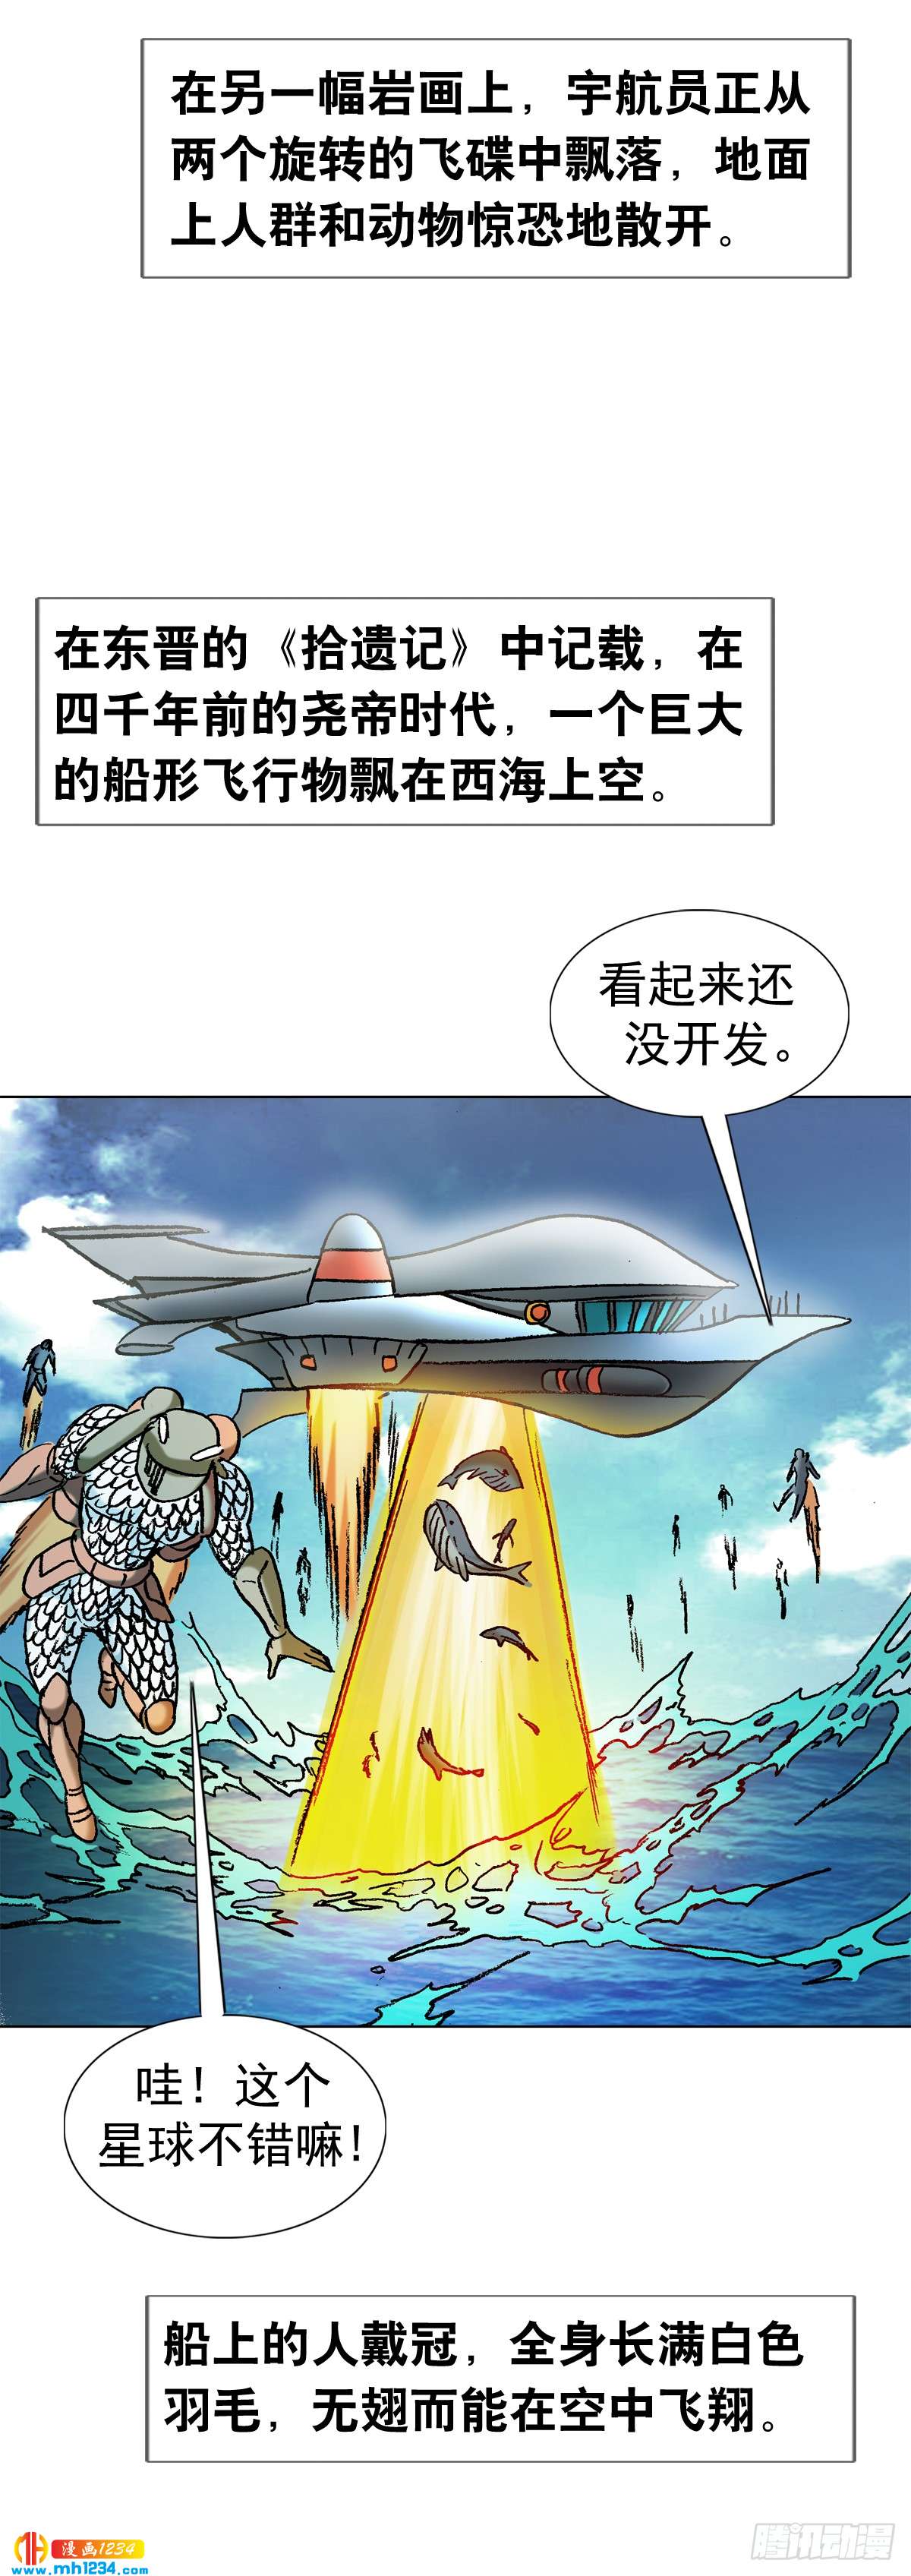 傳奇中國 - 5  古代外星人事件 - 2